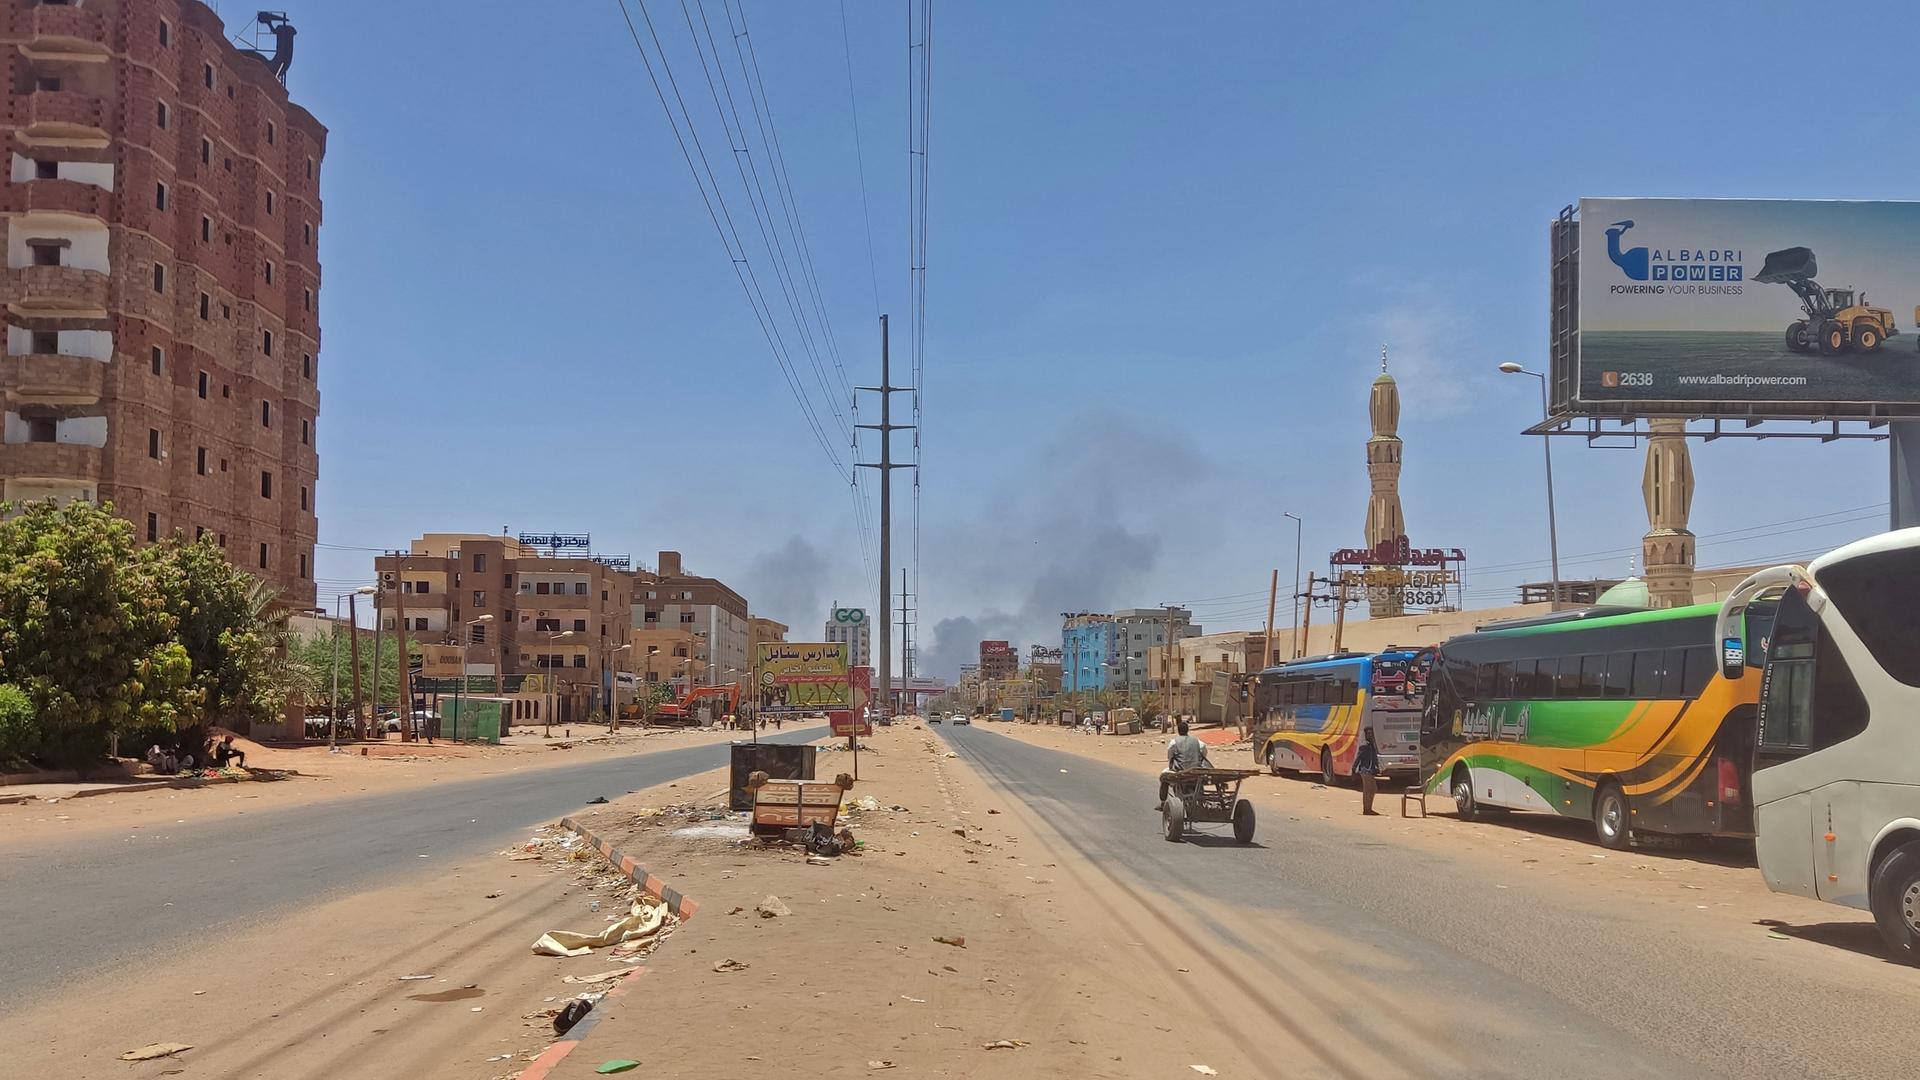 Eine fast leere staubige Straße in Khartum. Am Horizont ist Rauch zu sehen.